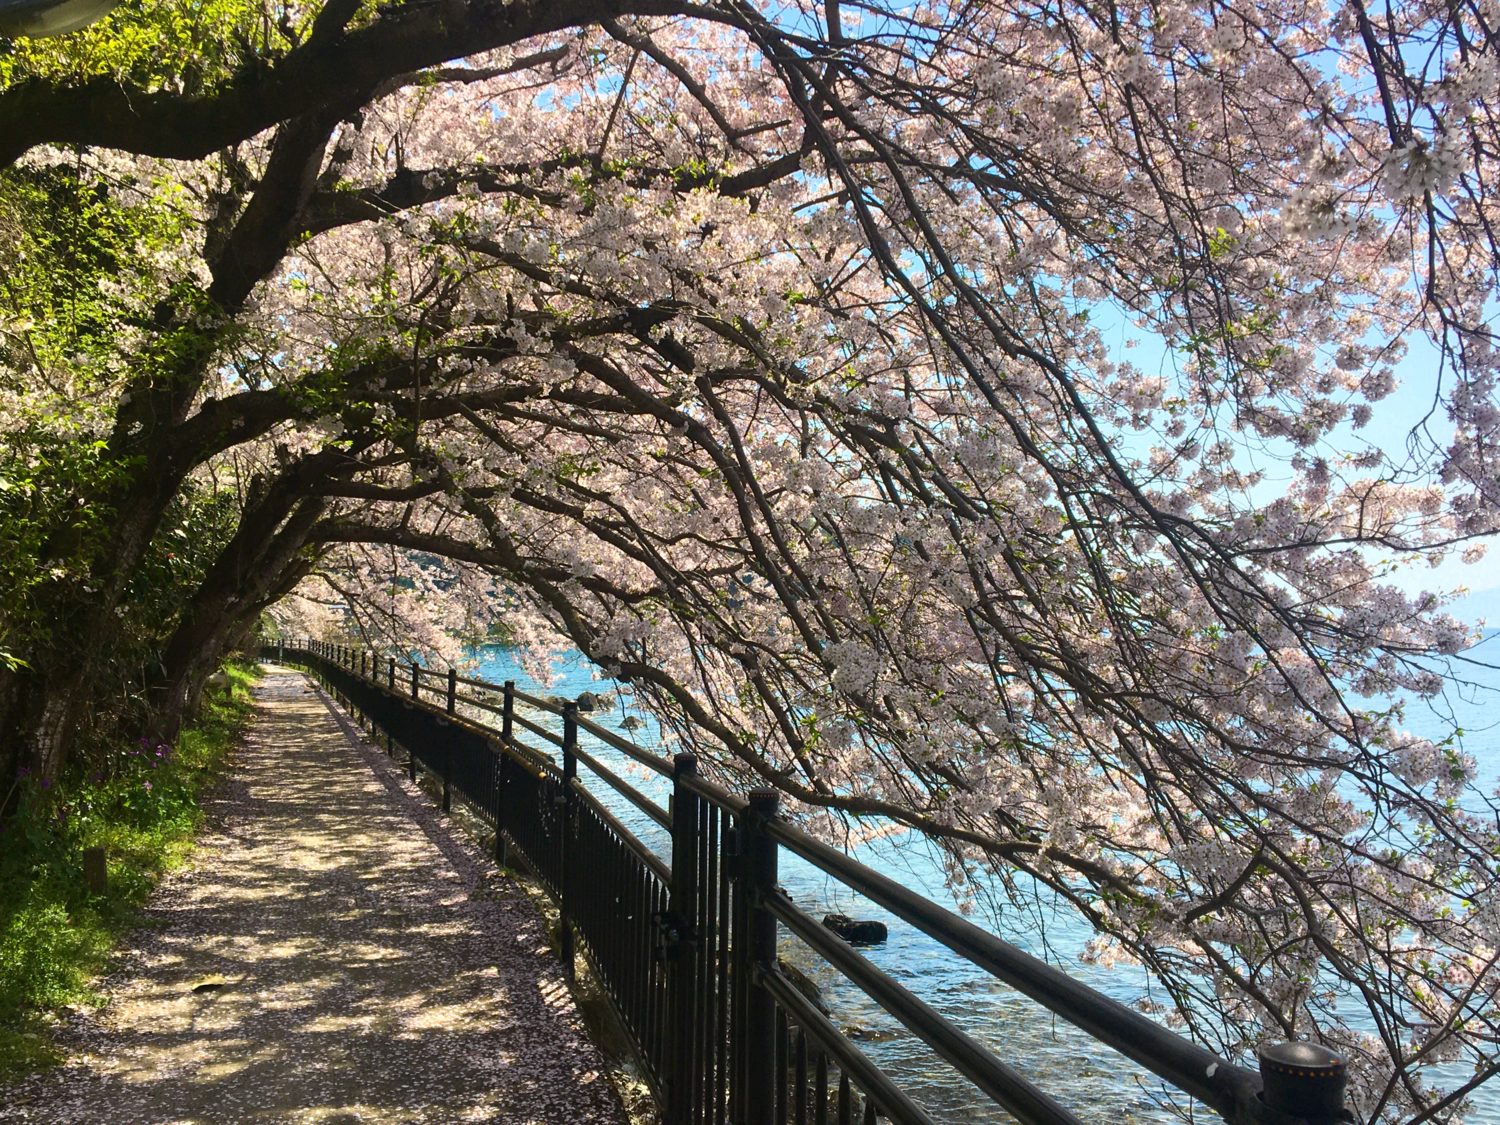 琵琶湖湖岸の桜のトンネル。湖面すれすれまで桜が垂れている。